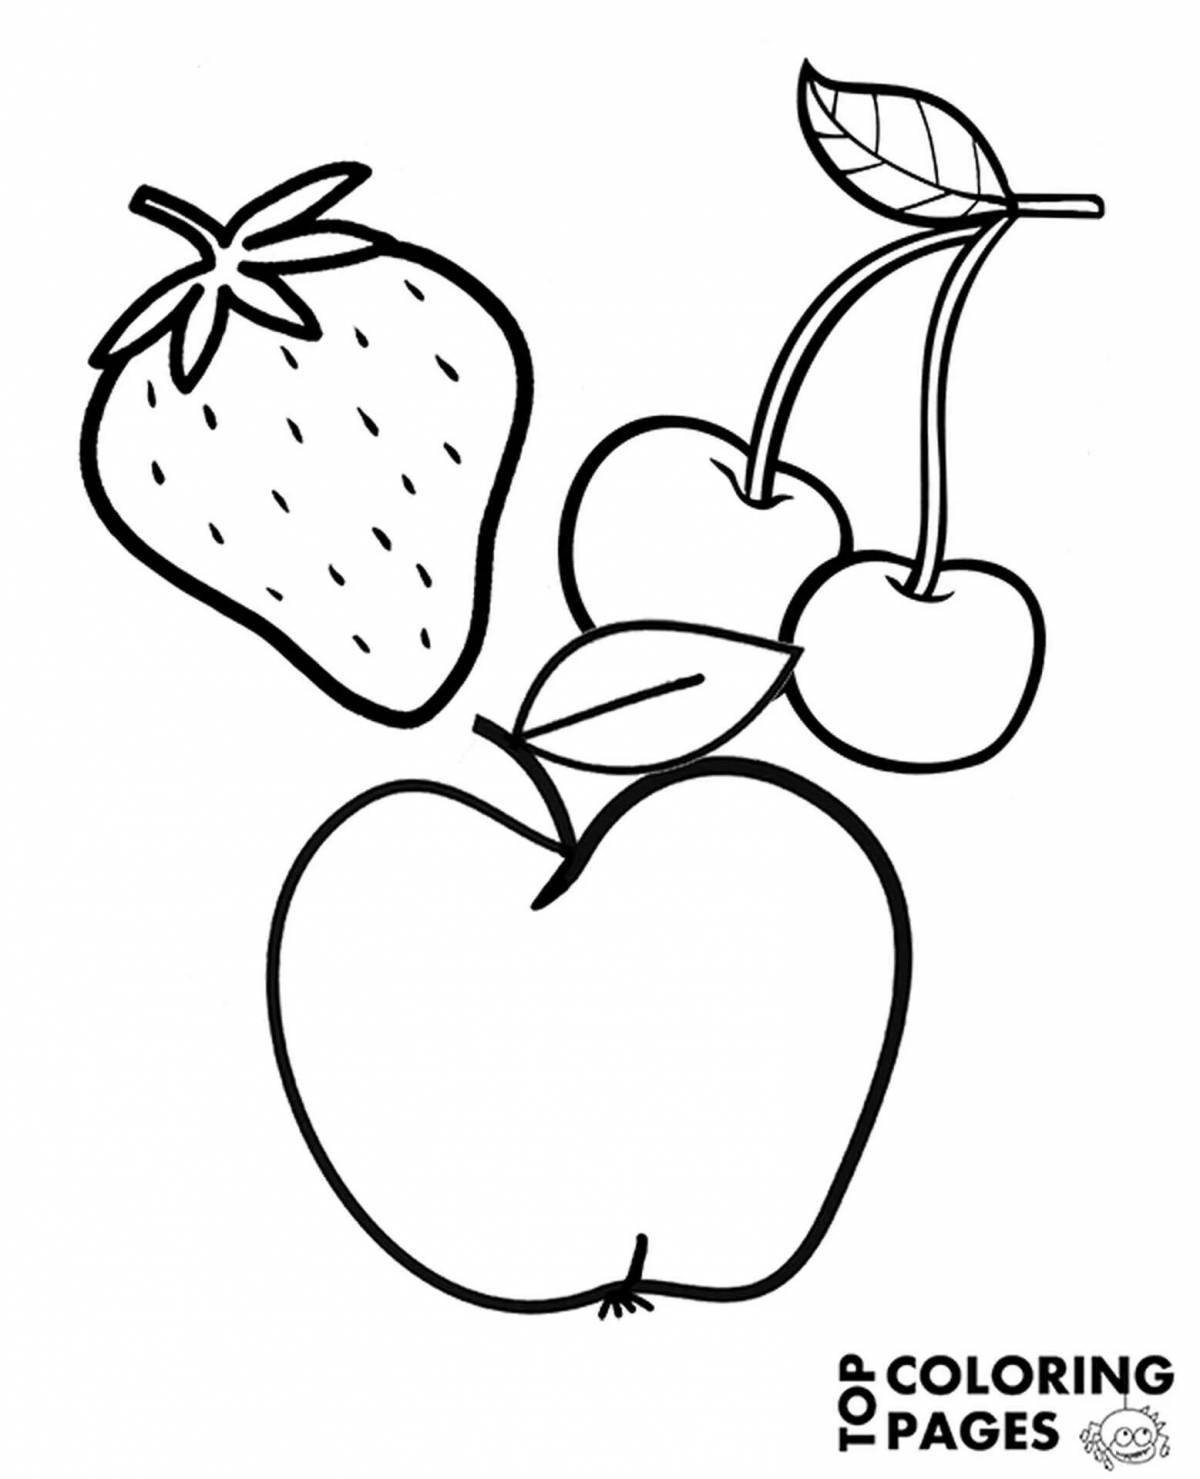 Игривая страница раскраски яблок и груш